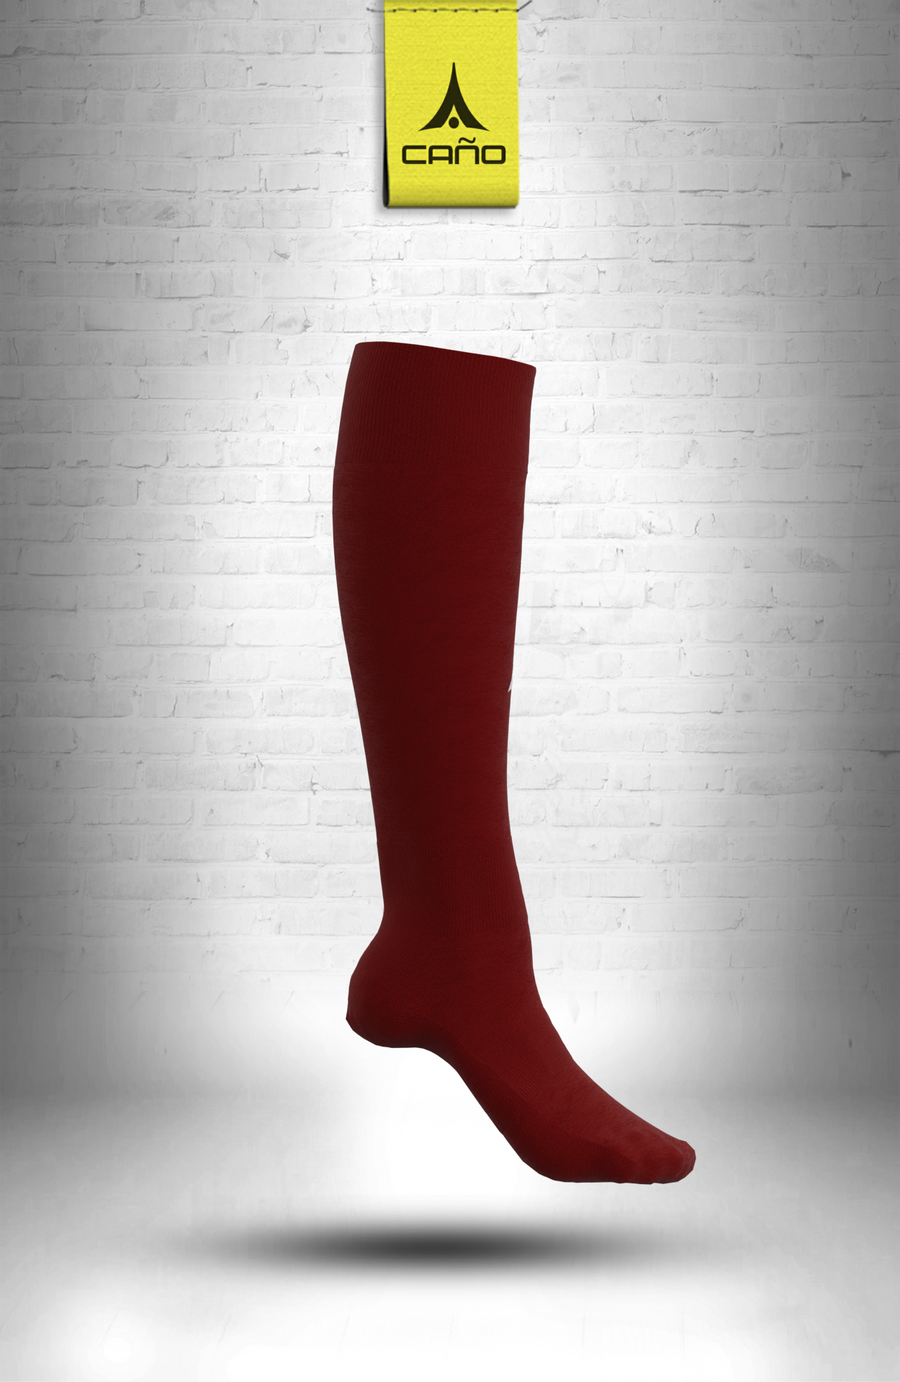 $10.00 - Caño Maroon Soccer Sock